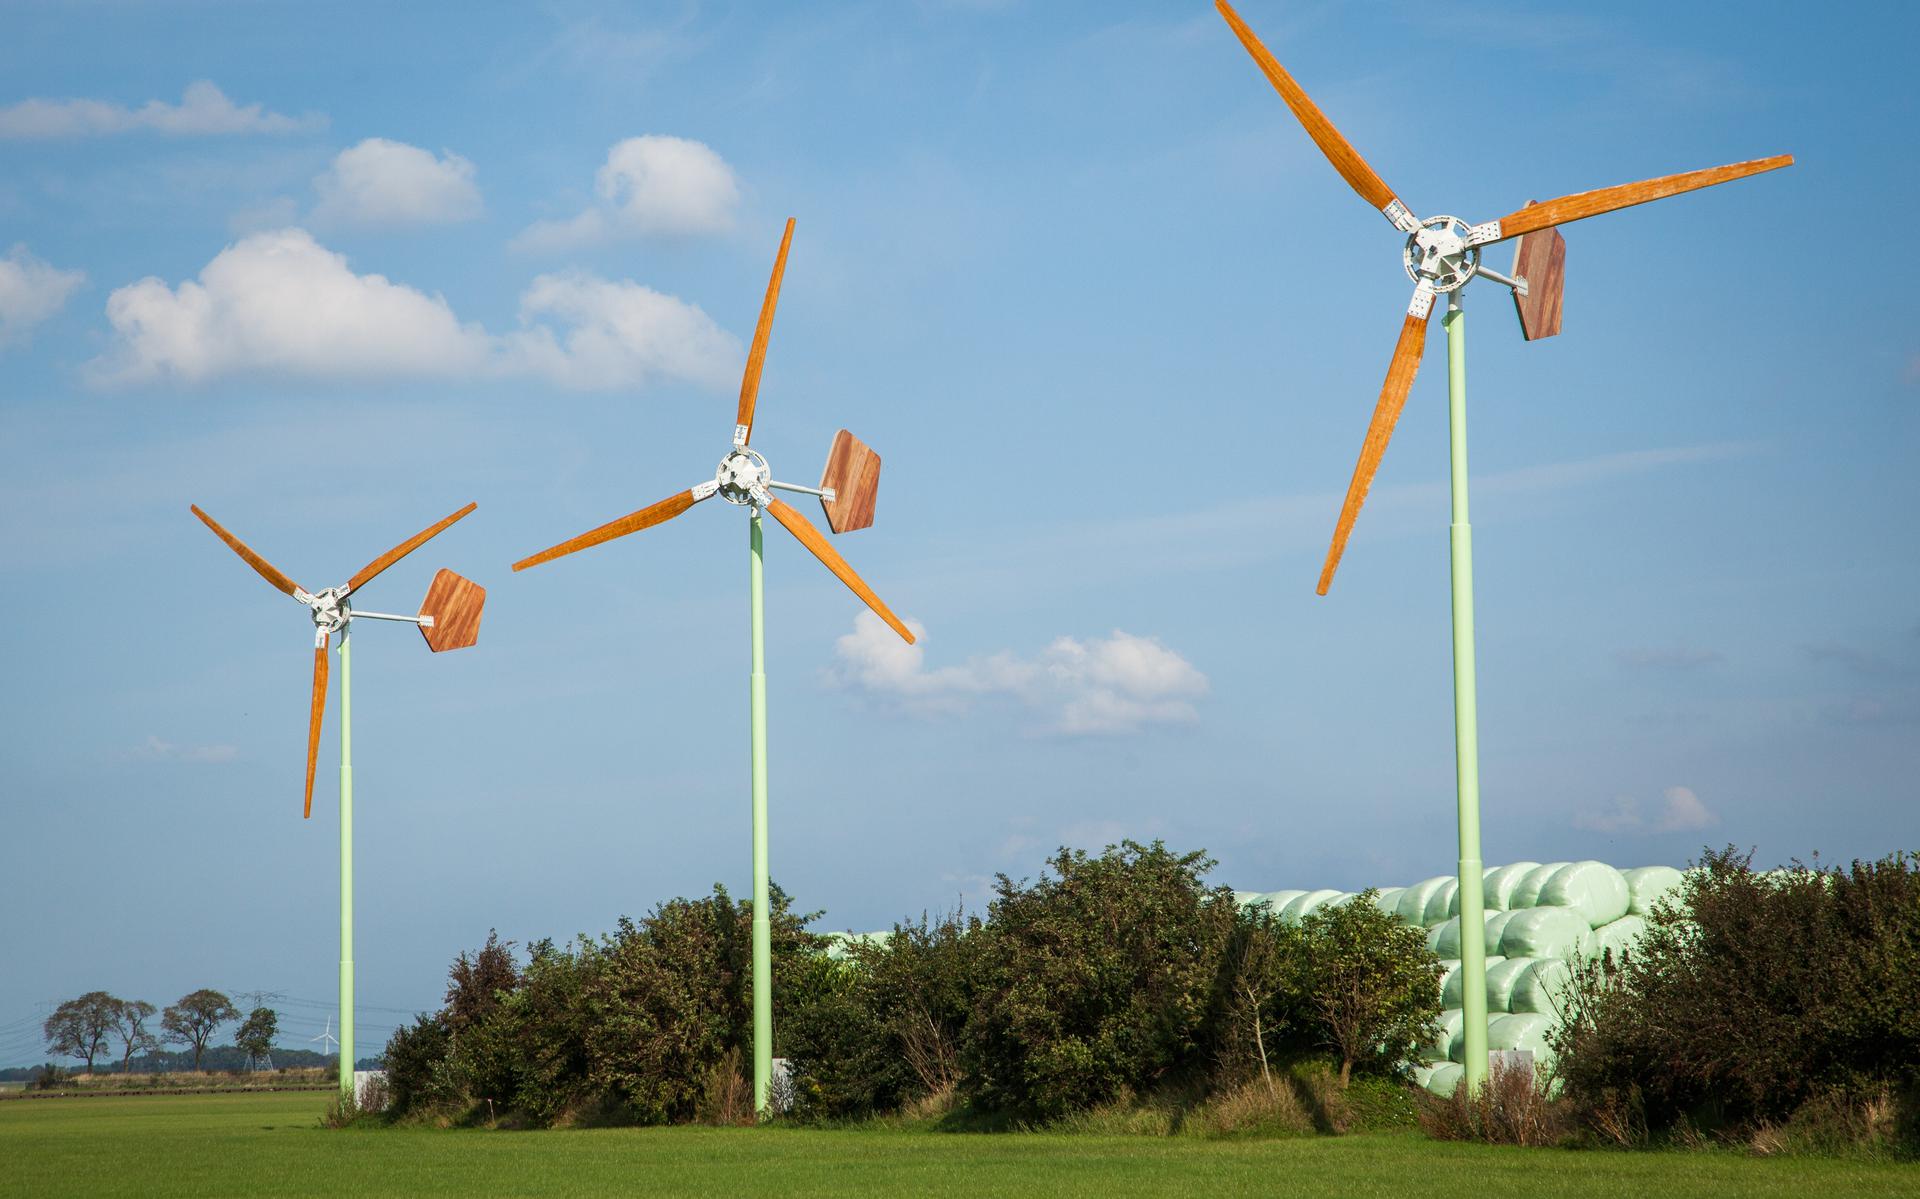 Kleine windmolens in Zuidbroek van fabrikant EAZ Wind uit Hogezand. 